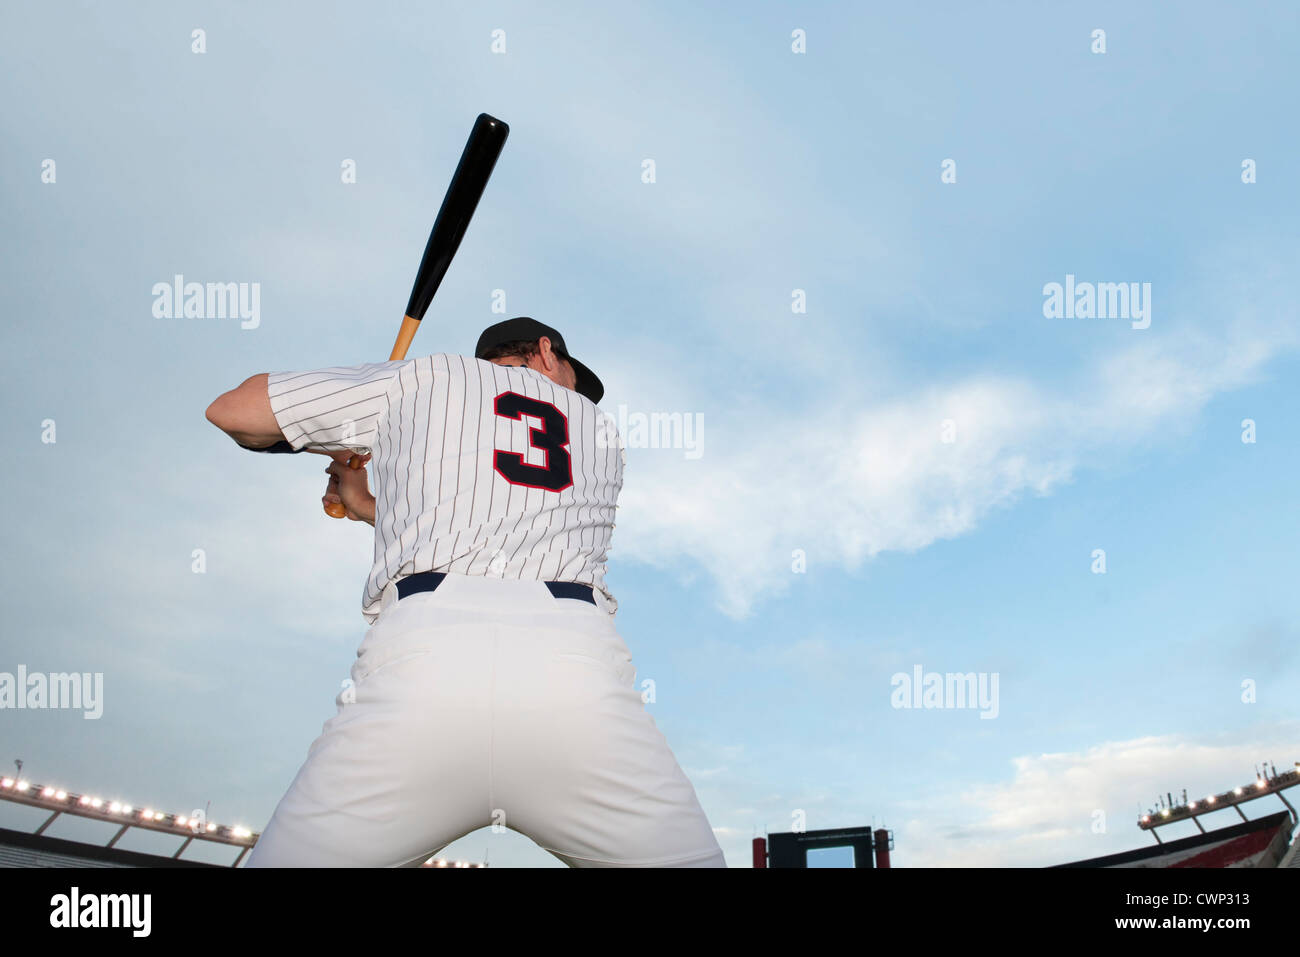 Giocatore di baseball preparando a bat, vista posteriore Foto Stock